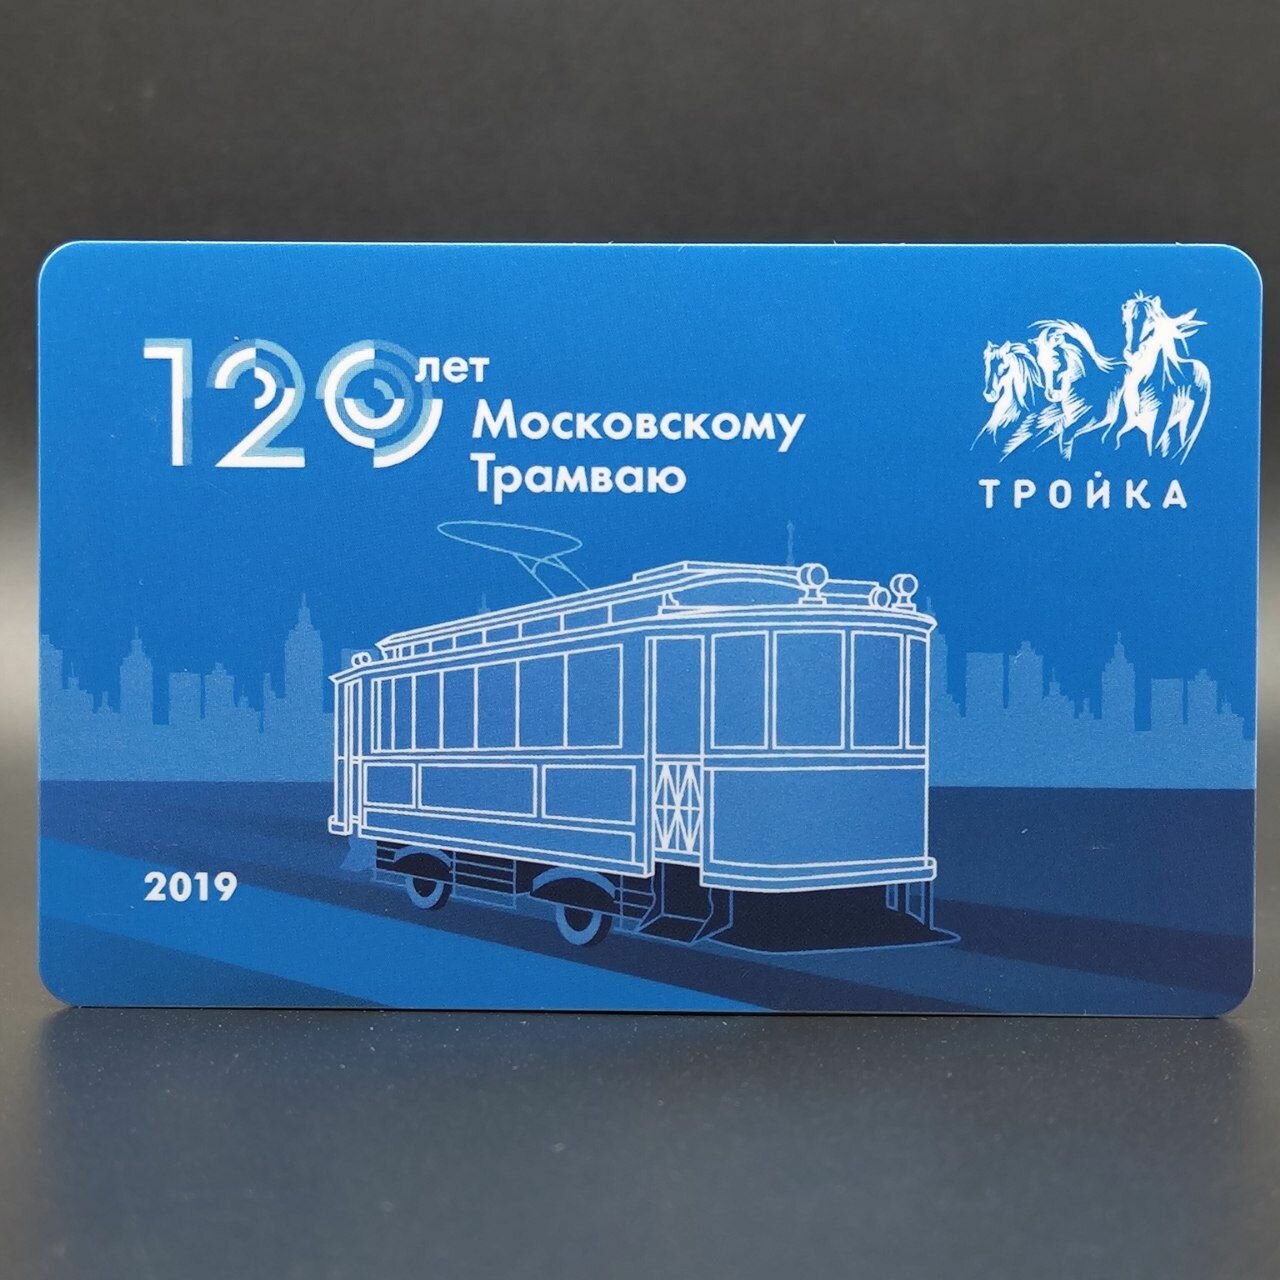 Транспортная карта метро и наземного транспорта Тройка - 120 лет Московскому трамваю